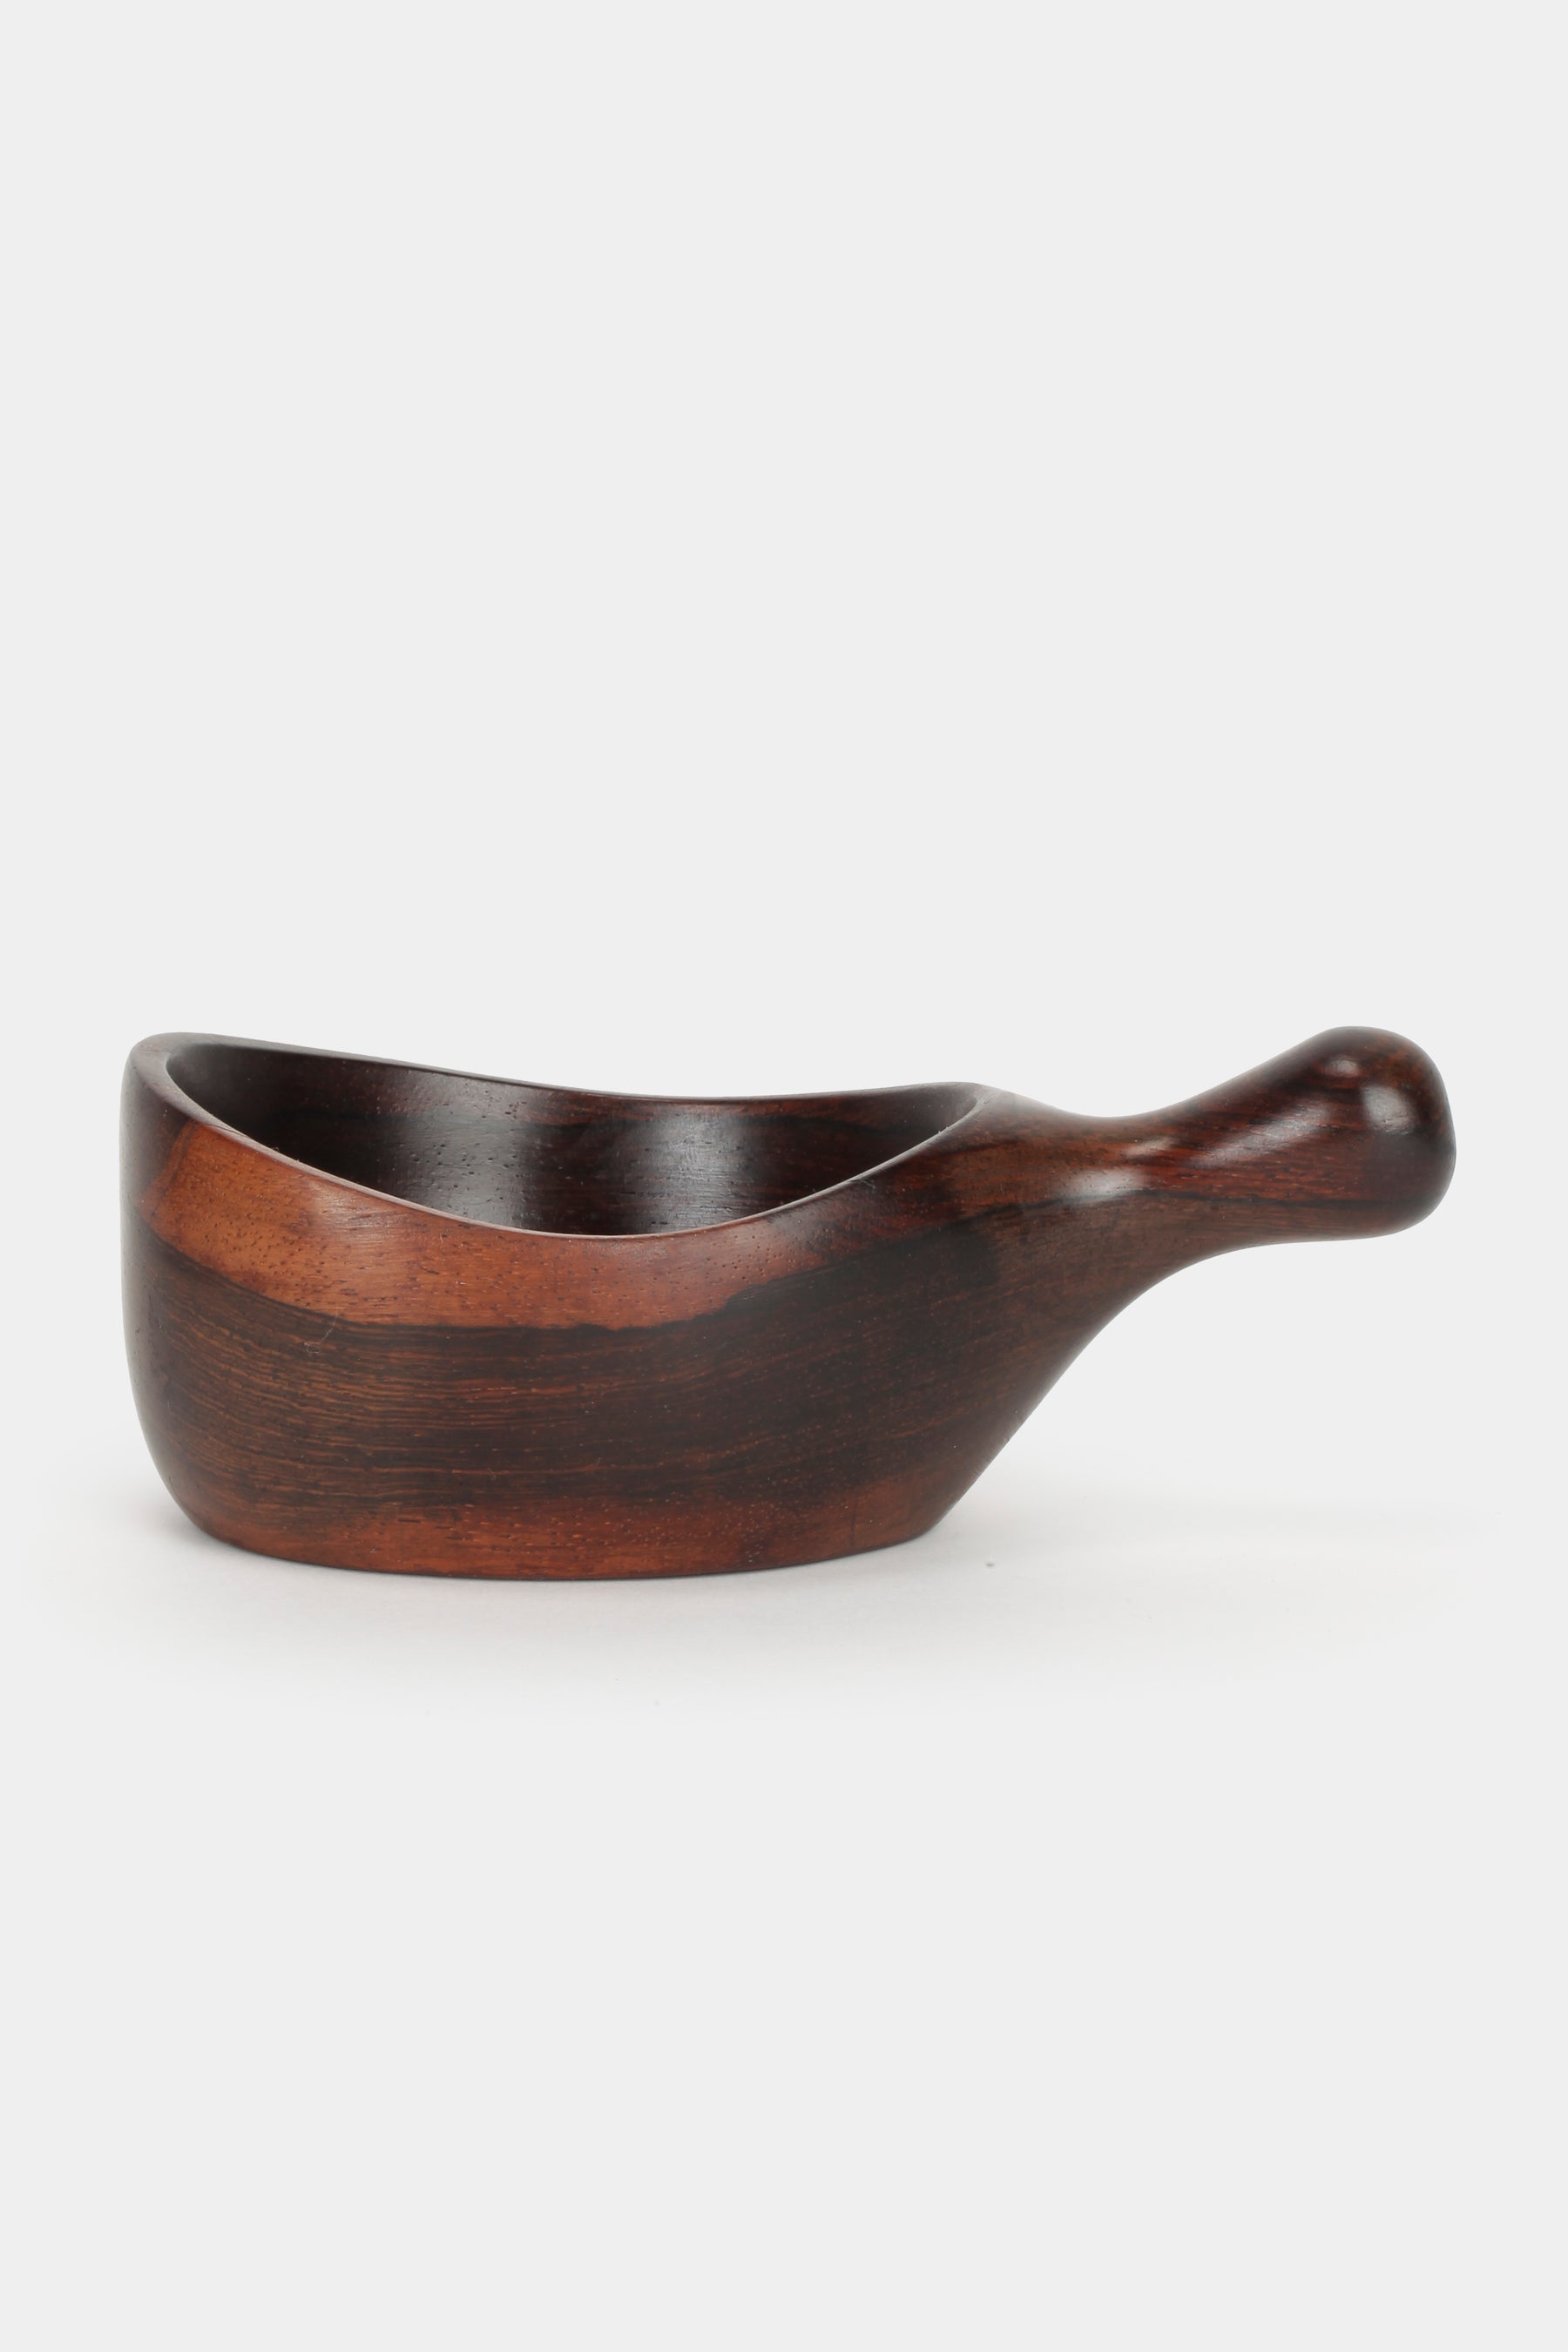 Wooden Bowl Jean Gillon  Art Brazil, 60s